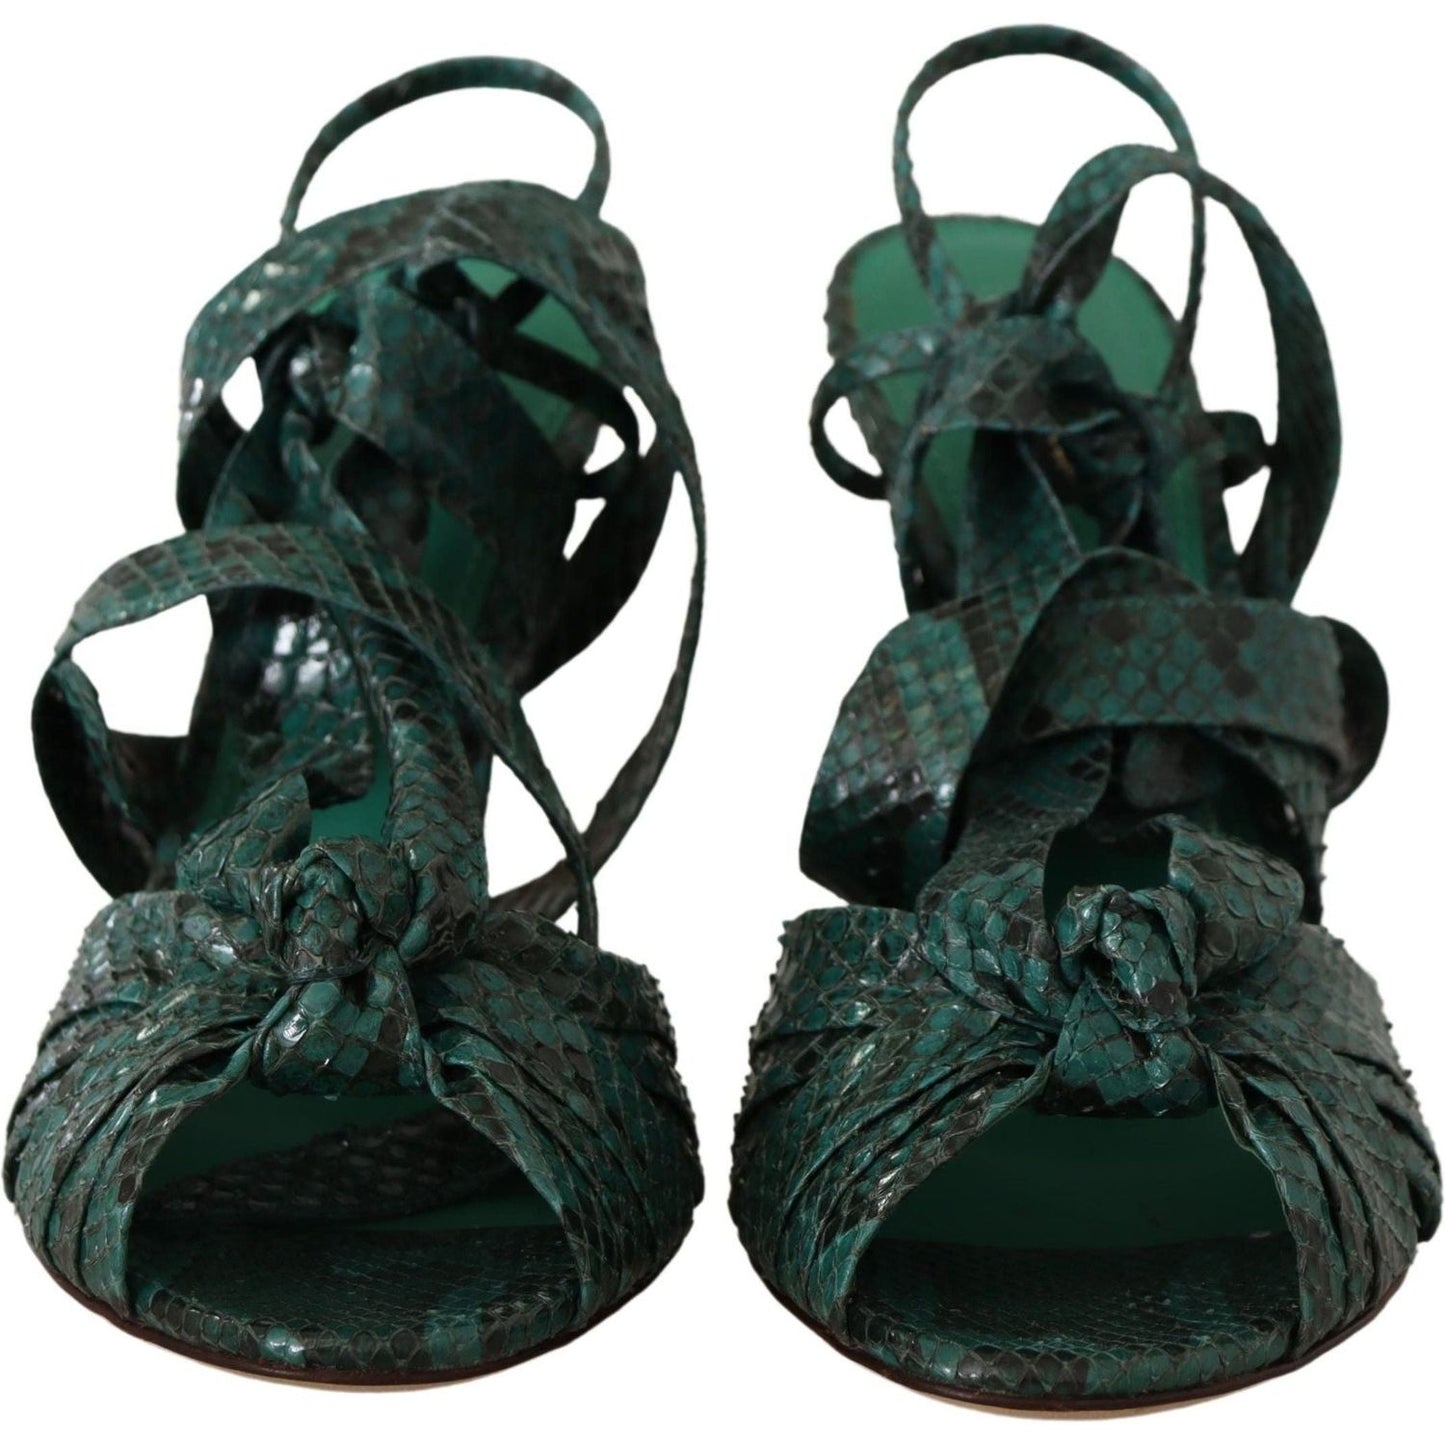 Dolce & Gabbana Elegant Green Python Strappy Heels green-python-strap-sandals-heels-shoes IMG_0357-7285192d-6a7.jpg